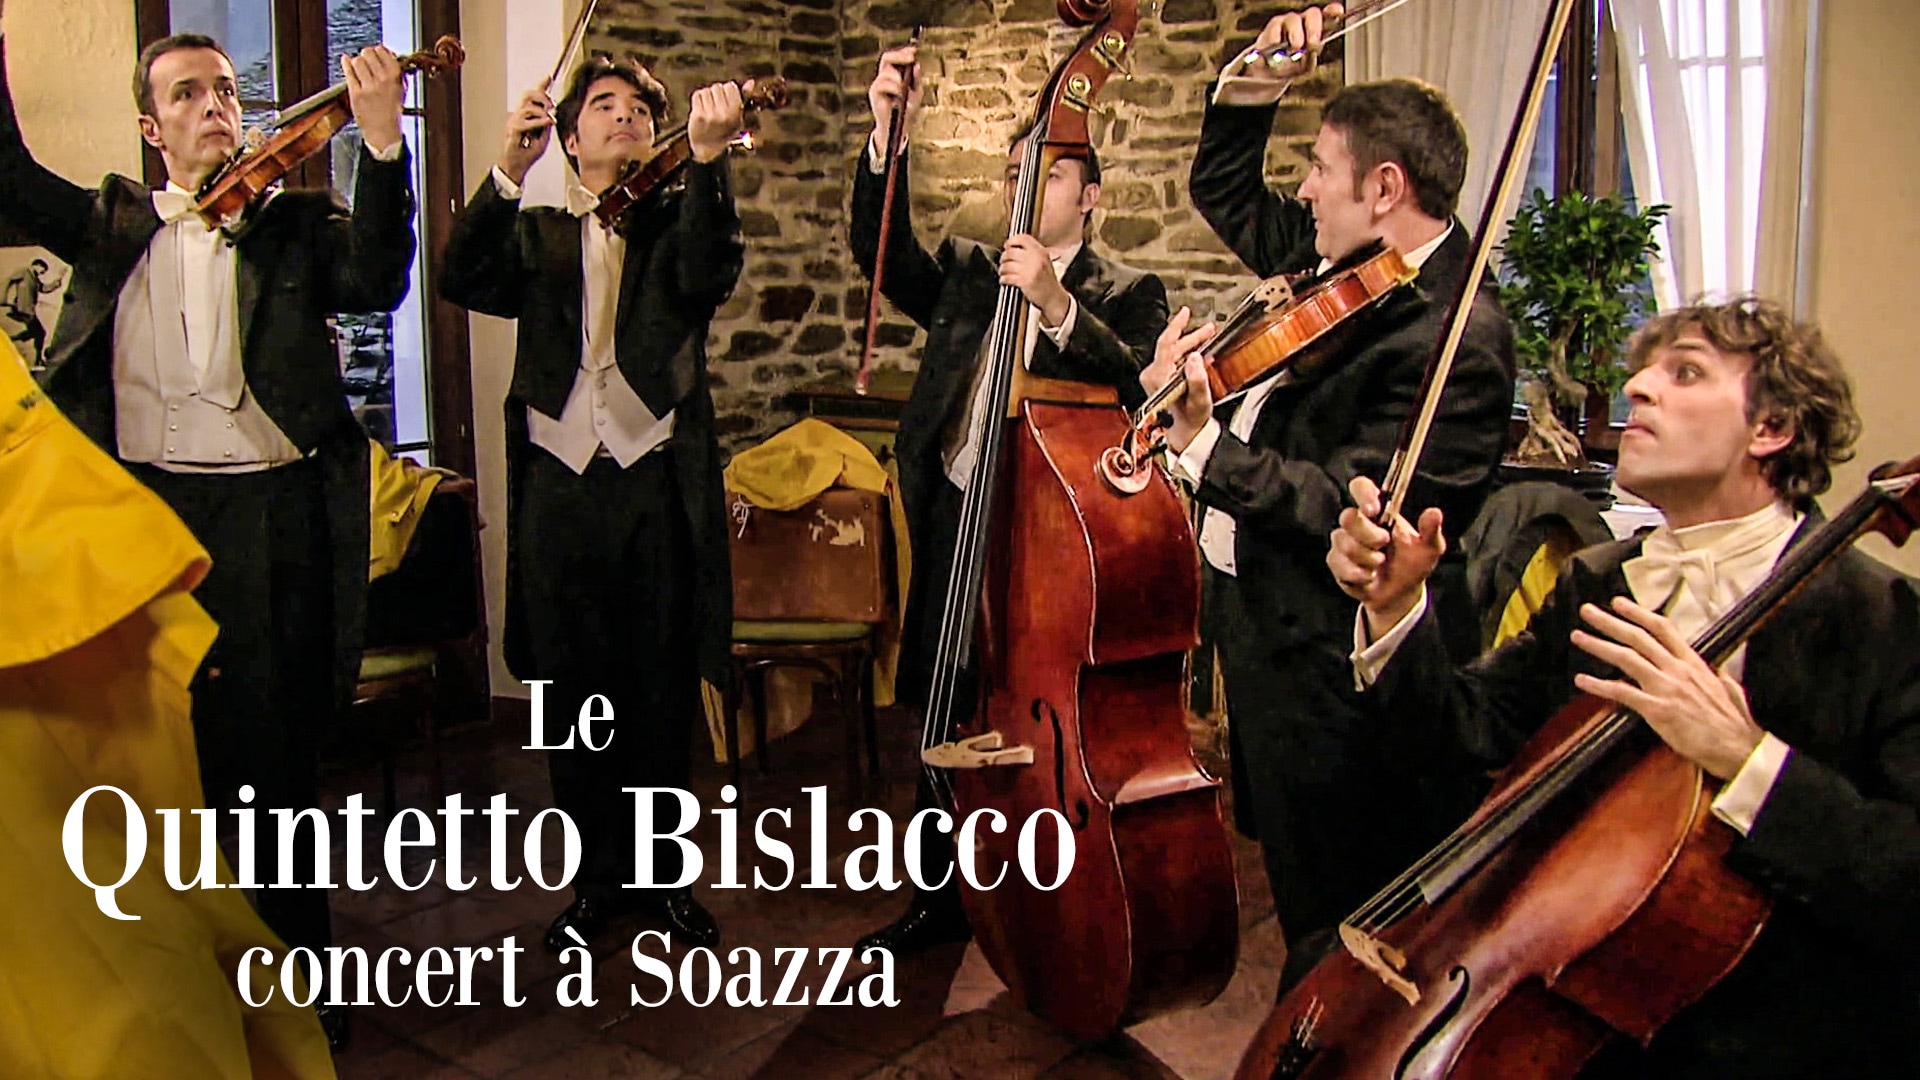 Le Quintetto Bislacco, concert à Soazza